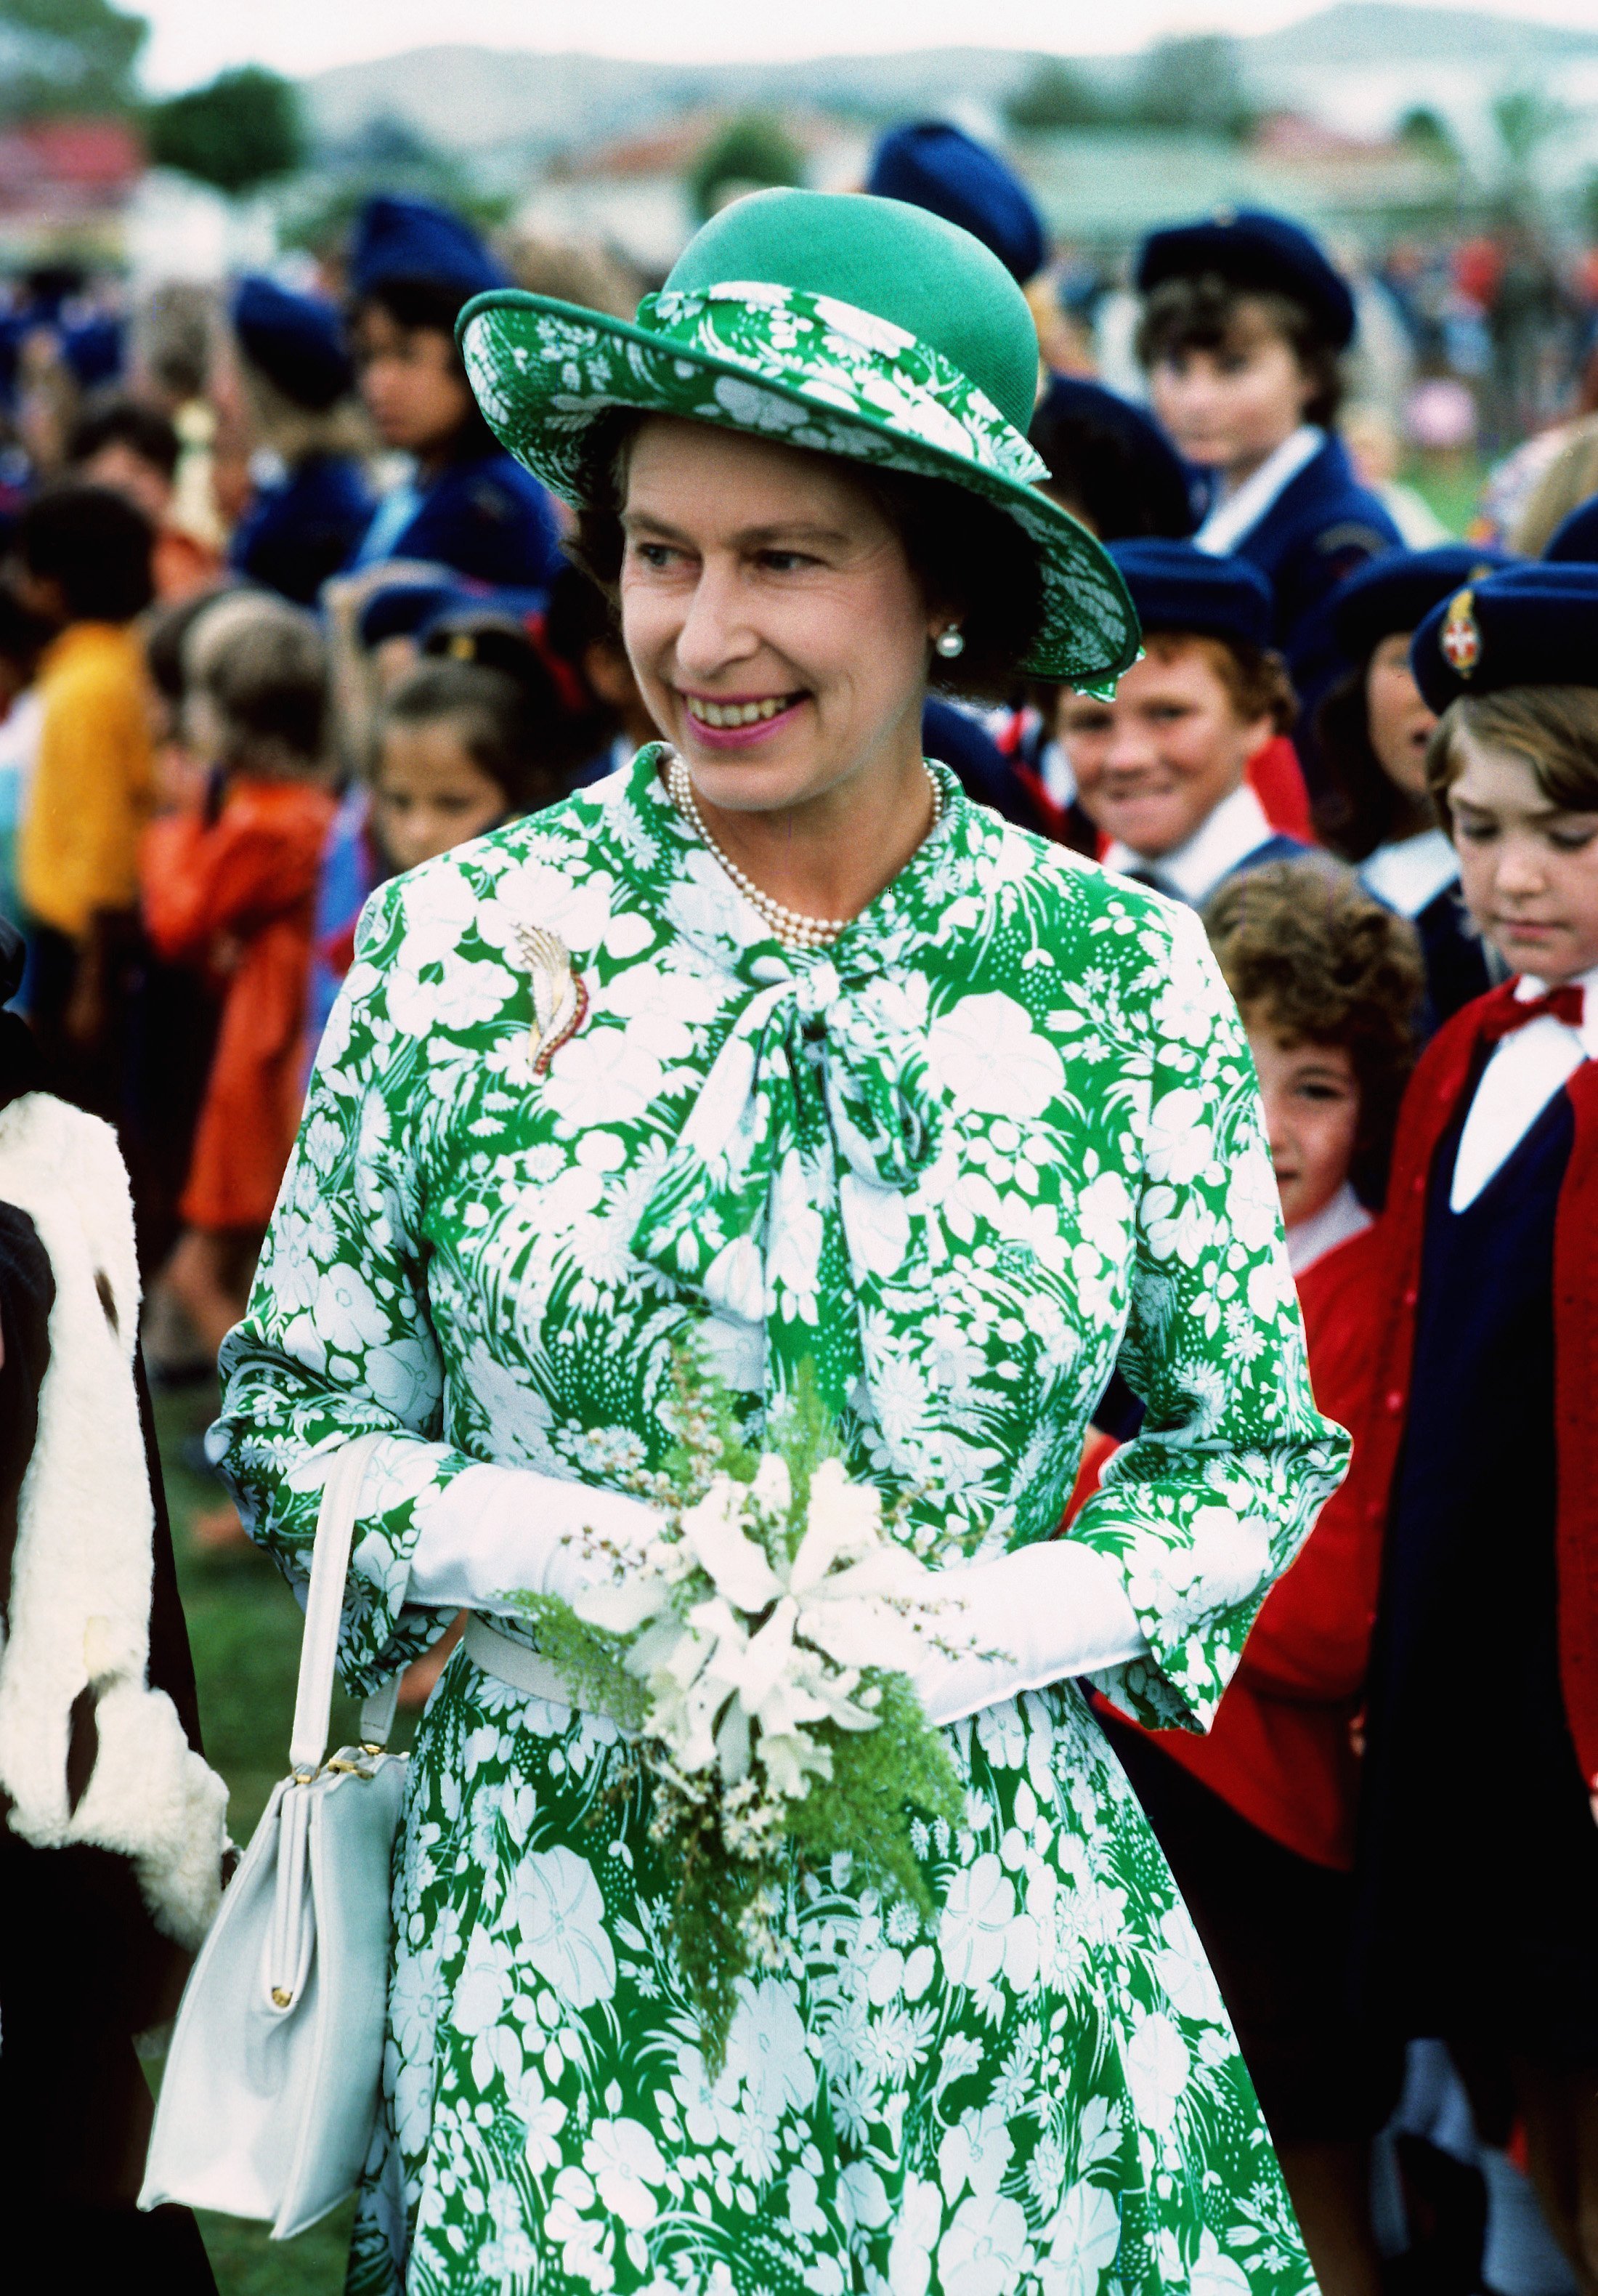 La reine Elizabeth ll sourit lors de sa visite en Nouvelle-Zélande dans le cadre de sa tournée annuelle du jubilé d'argent en mars 1977. | Source: Getty Images